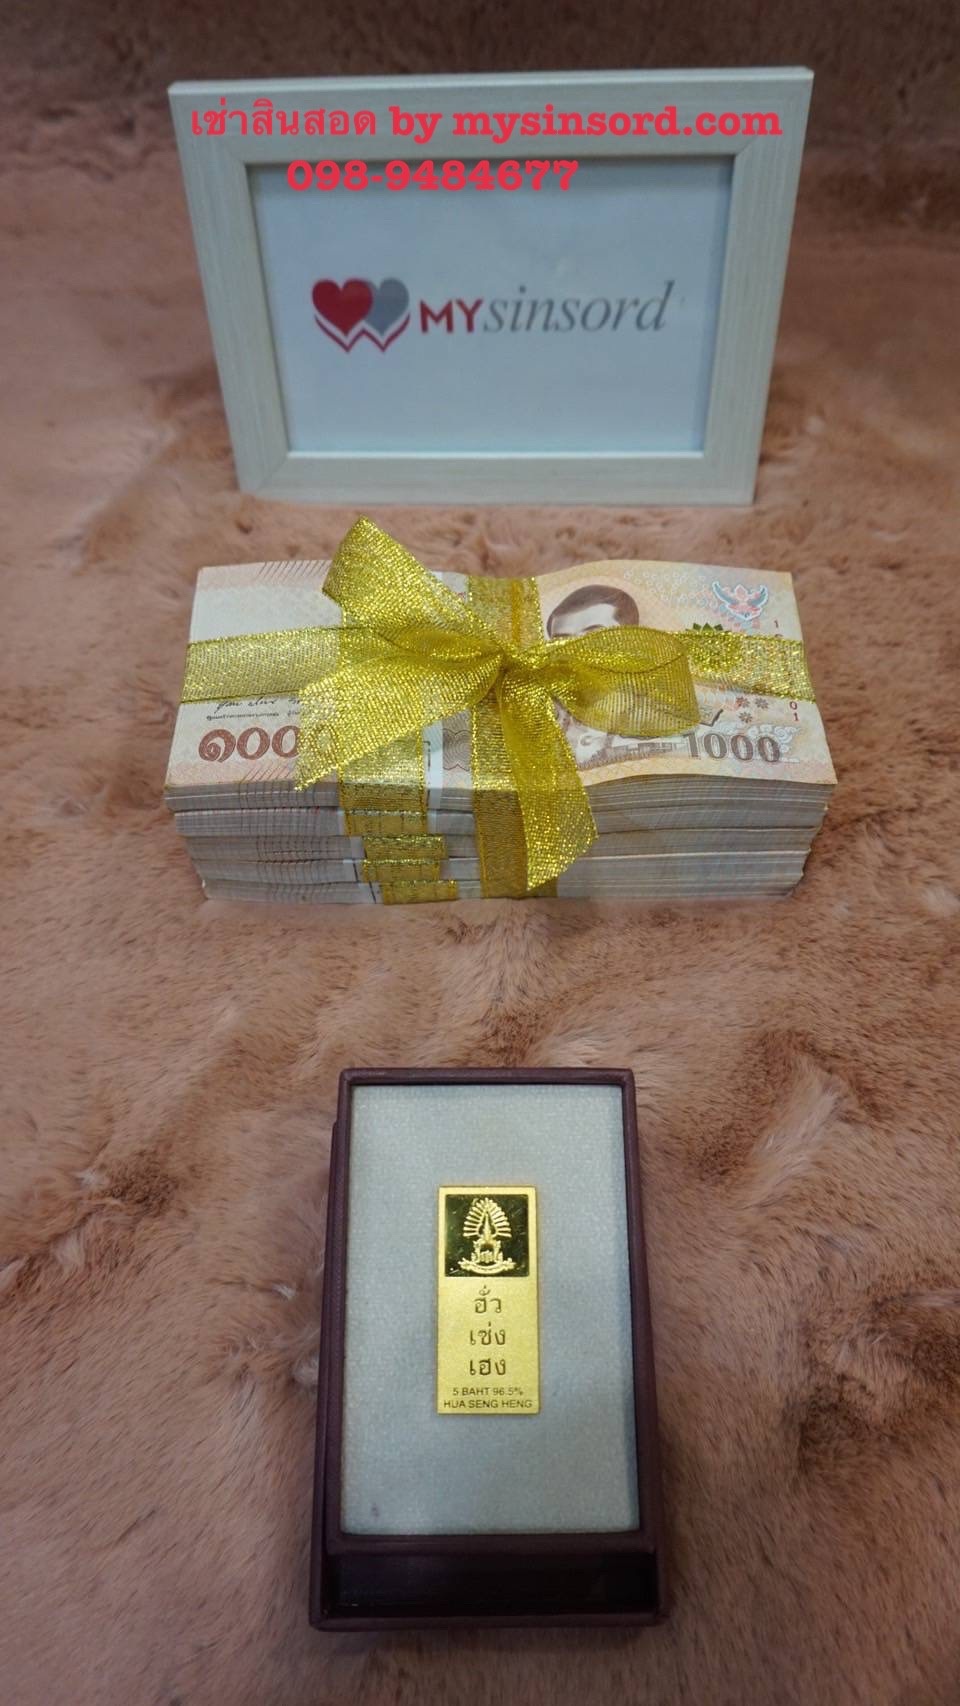 @mysinsord ขอบคุณ คุณลูกค้าที่มอบความไว้วางใจ ชำระเงินค่าเช่าสินสอด 20,000 บาท (โปรโมชั่นถูกที่สุด เงินสินสอด 500,000 บาท ทองคำแท่ง 5 บาท ราคาเพียง 20,000 บาท) งานจัดในจังหวัดหนึ่งภาคกลาง ไม่ว่าไกลแค่ไหน เราพร้อมบริการจัดส่งสินสอดถึงที่ ทั่วไทย เราไม่เปิดเผยข้อมูล ไม่ถ่ายรูปรีวิวงาน ไม่เปิดเผยวันและสถานที่จัดงาน ทุกอย่างเป็นความลับ เรารีวิวได้เพียงแค่นี้ เพราะเรายึดถือความลับของลูกค้าเป็นอันดับ1 บริการให้เช่าสินสอดทองหมั้น อันดับ 1 ดีที่สุด ราคาถูกที่สุด เรากล้าการันตีคุณภาพสอบถามเช็คคิวงานได้ตลอด 24 ชม. Tel: 098-948-4677 พี่เล็ก Line id : 0989484677 หรือ กด link ด้านล่างเลยครับ https://line.me/ti/p/CkJn_gHJH6 Official website : http://mysinsord.com facebook : https://www.facebook.com/mysinsord Instagram : https://www.secure.instagram.com/mysinsord/ TikTok : https://www.tiktok.com/@mysinsord YouTube : https://www.youtube.com/channel/UCaOiB68kD6zuCOcOsJD0FIg เพียงคุณเตรียมแค่พาน ส่วนสินสอดทองหมั้นให้เราดูแล เราจะเติมเต็มงานแต่งงานในฝันของทุกคู่รักให้สมบูรณ์แบบยิ่งขึ้น Mysinsord ทุ่มเทในทุกๆงาน เราจะบริการให้ดีที่สุด ตรงต่อเวลา ทำไมต้องใช้บริการกับเรา มั่นใจได้ ด้วยประสบการณ์ที่เราให้บริการเช่าสินสอด ทองหมั้น มากกว่า 10 ปี บริการคู่บ่าวสาวมากกว่า 100 คู่ จนได้รับการบอกต่อในการบริการที่ดีเยี่ยม ตรงต่อเวลา มีสำนักงานที่ตั้งเป็นหลักแหล่งแน่นอน ติดต่อสอบถามข้อมูลได้ตลอดเวลา ราคาที่คุ้มค่าและคุณภาพดีเยี่ยม บริการเช่าสินสอดของ mysinsord.com รับประกันเงิน และทองคำ เป็นของแท้ 100% สามารถตรวจสอบได้ ในส่วนราคา เรานำเสนอราคาถูกและคุ้มค่า เรามีราคาโปรโมชั่นสำหรับเช่าเงินสด พร้อมทองคำแท่ง ในราคาที่ถูกยิ่งขึ้น บริการที่ดีเยี่ยม ใส่ใจดูแลดุจญาติ mysinsord.com เราให้บริการเช่าสินสอด ทองหมั้น มากกว่า 10 ปี บริการคู่บ่าวสาวมากกว่า 100 คู่ จนได้รับการบอกต่อในการบริการที่ดีเยี่ยม ตรงต่อเวลา ใส่ใจดูแลดุจญาติ เงินสินสอด เราใช้เงินธนบัตรใหม่ทั้งหมด ไม่ใช้เงินหมุนเวียนจากงานแต่งงานที่หนึ่ง ไปใช้อีกงานหนึ่ง เพื่อให้มั่นใจได้ว่า จะได้รับเงินธนบัตรใหม่ทั้งหมด ทองหมั้น เราใช้ทองคำแท่งใหม่ จากร้านฮั้วเซ่งฮง เยาวราช ไม่มีเช็คอิน ไม่มีรีวิว ไม่มีรีวิวภาพบรรยากาศในงานแต่งงาน สัญญาเช่าสินสอด ในการเช่าสินสอด เราทำเป็นสัญญาเช่าสินสอดชัดเจน เพื่อความมั่นใจทั้งสองฝ่าย เรายึดถือสัญญาเช่าสินสอด เป็นสำคัญ ใบเสร็จรับเงินค่าเช่าสินสอด เมื่อรับเงินค่าเช่าสินสอด จะมีใบเสร็จรับเงินมอบให้เพื่อเป็นหลักฐานสำคัญ จัดส่งสินสอดทั่วประเทศ เราให้บริการจัดส่งสินสอดถึงที่ทั่วไทย ตรงเวลา #เช่าสินสอด #เช่าสินสอดราคา #เช่าเงินสินสอด #เช่าสินสอดของหมั้น #เช่าสินสอดทั่วไทย #เช่าสินสอดโคราช #เช่าสินสอดทองหมั้น #เช่าสินสอดแต่งงาน #เช่าสินสอดมืออาชีพ #เช่าสินสอดเชื่อถือได้ #เช่าสินสอดงานแต่ง #เช่าสินสอดภาคกลาง # เช่าสินสอดราคาถูก